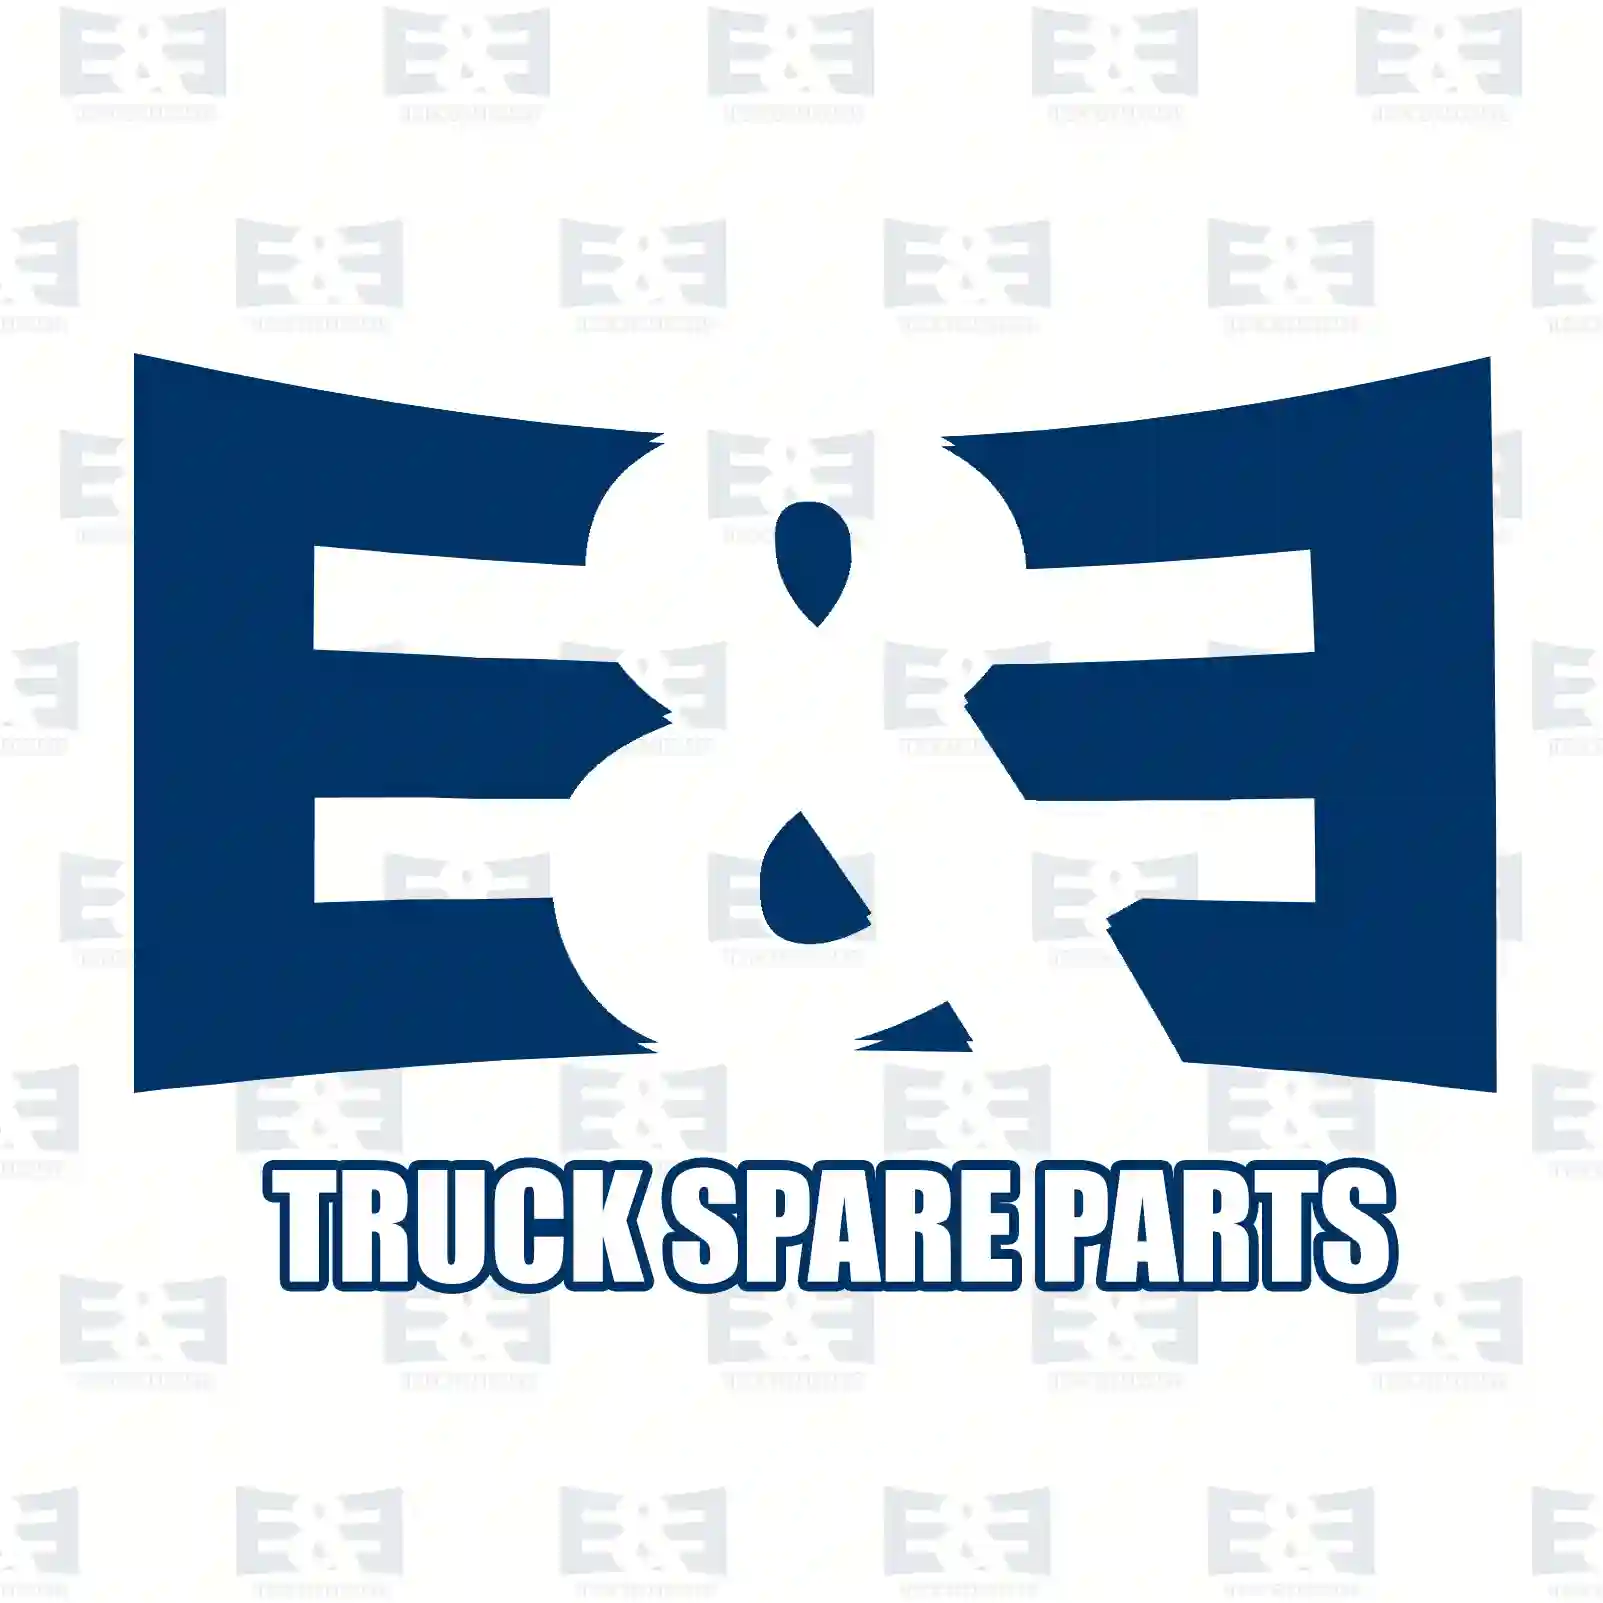 V-belt kit, 2E2286341, 91073833, 13H5693, 78G1384, 06580721391, 06580721392, 06580731392, 517951M1, 7701029711, 950829, 952148 ||  2E2286341 E&E Truck Spare Parts | Truck Spare Parts, Auotomotive Spare Parts V-belt kit, 2E2286341, 91073833, 13H5693, 78G1384, 06580721391, 06580721392, 06580731392, 517951M1, 7701029711, 950829, 952148 ||  2E2286341 E&E Truck Spare Parts | Truck Spare Parts, Auotomotive Spare Parts